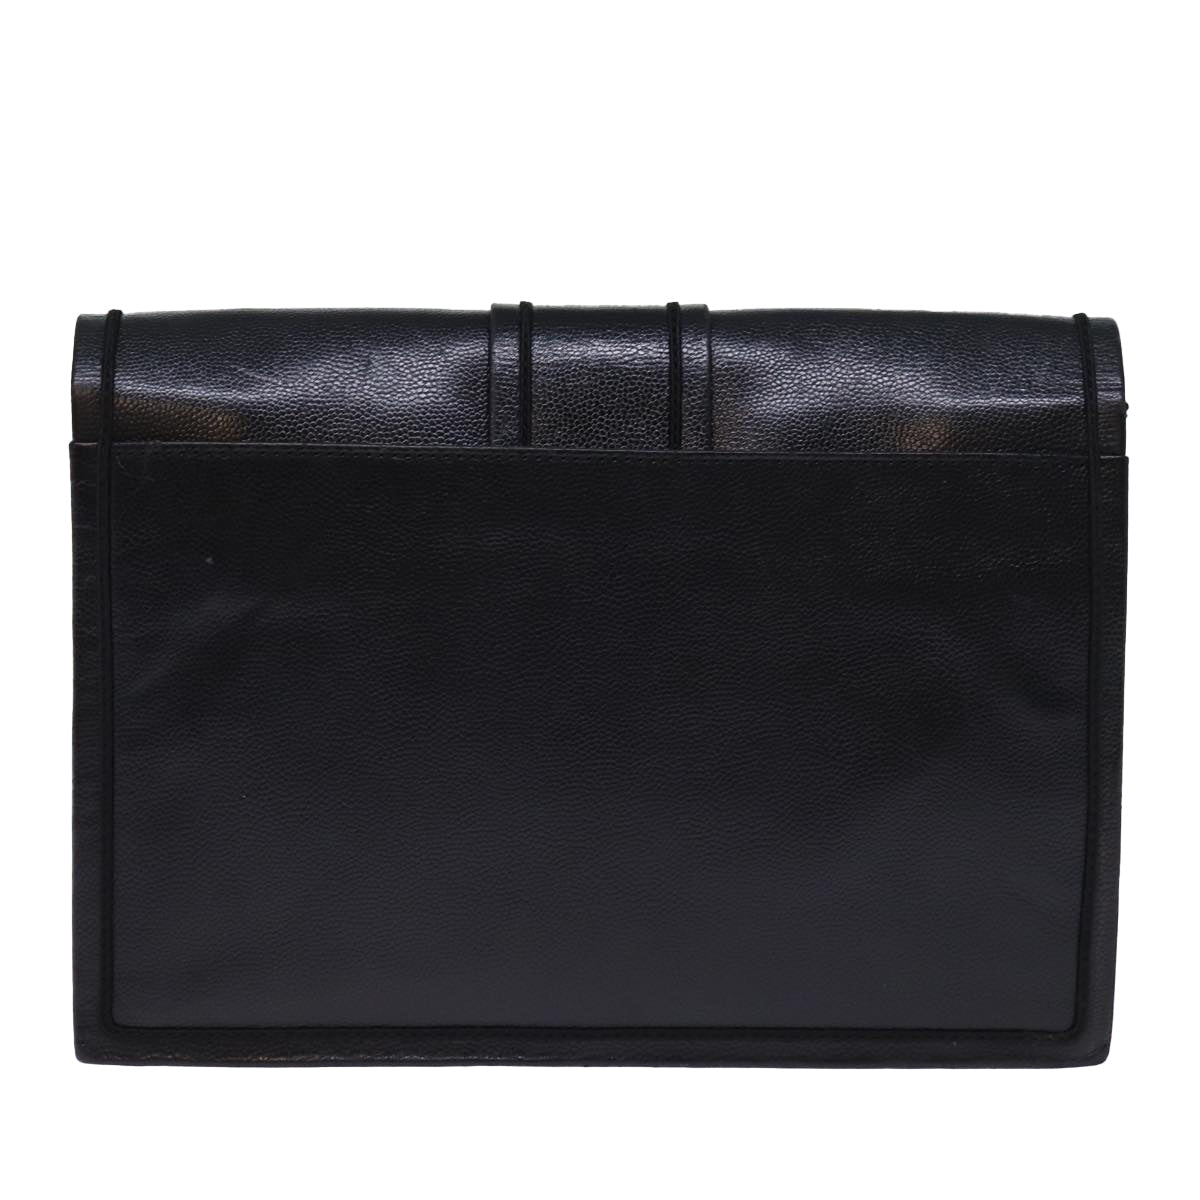 SAINT LAURENT Clutch Bag Leather Black Auth 74100 - 0